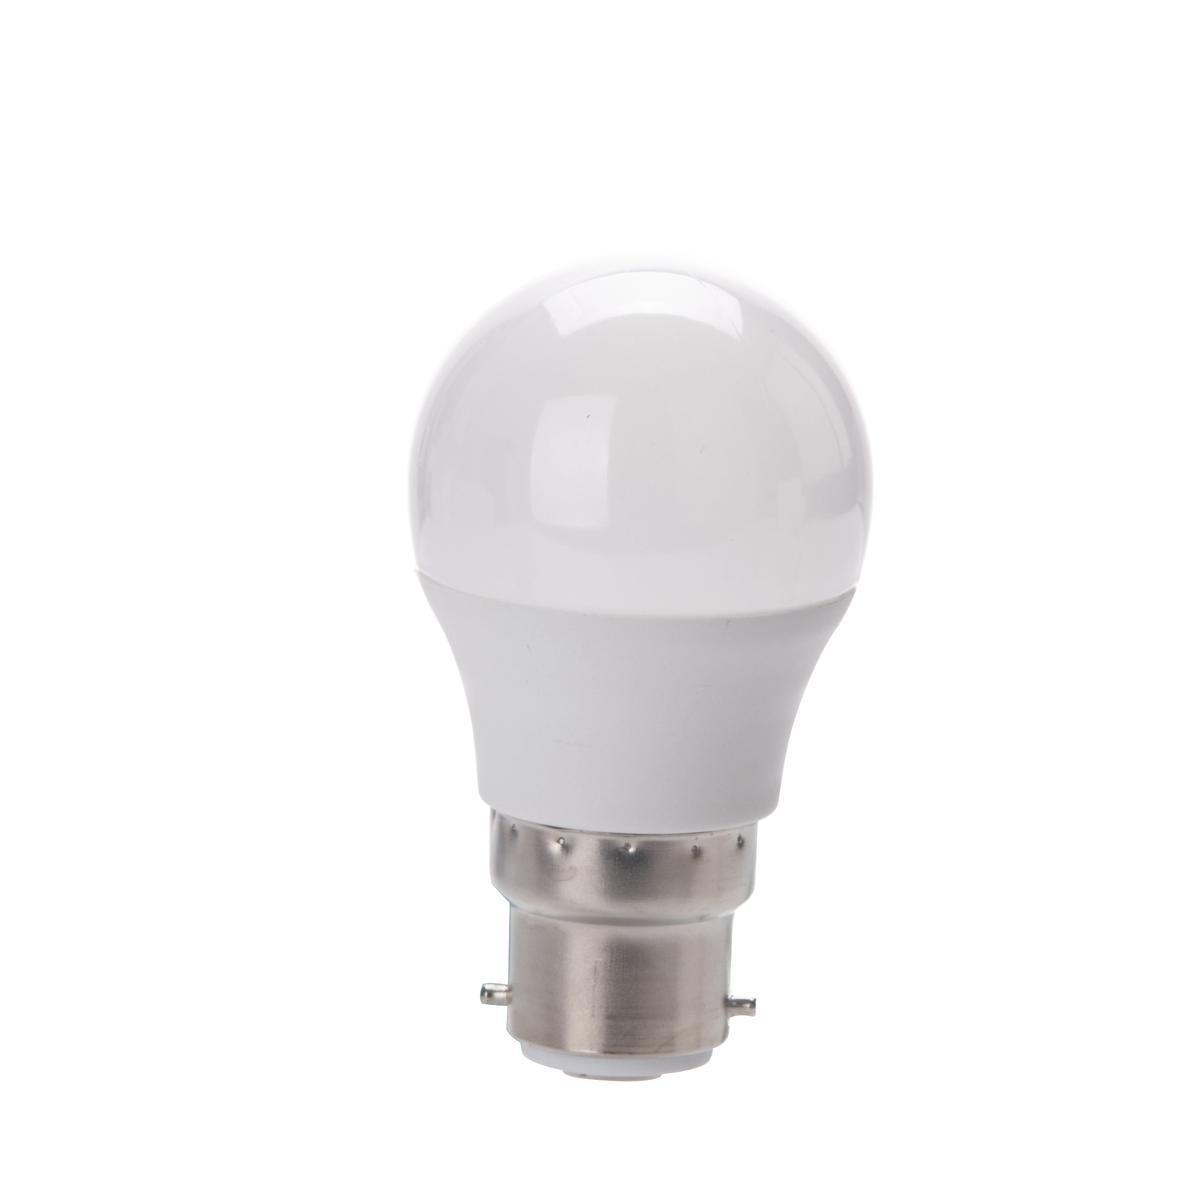 Ampoule LED à économie d'énergie G45 B22 - 400 LM - Blanc chaud